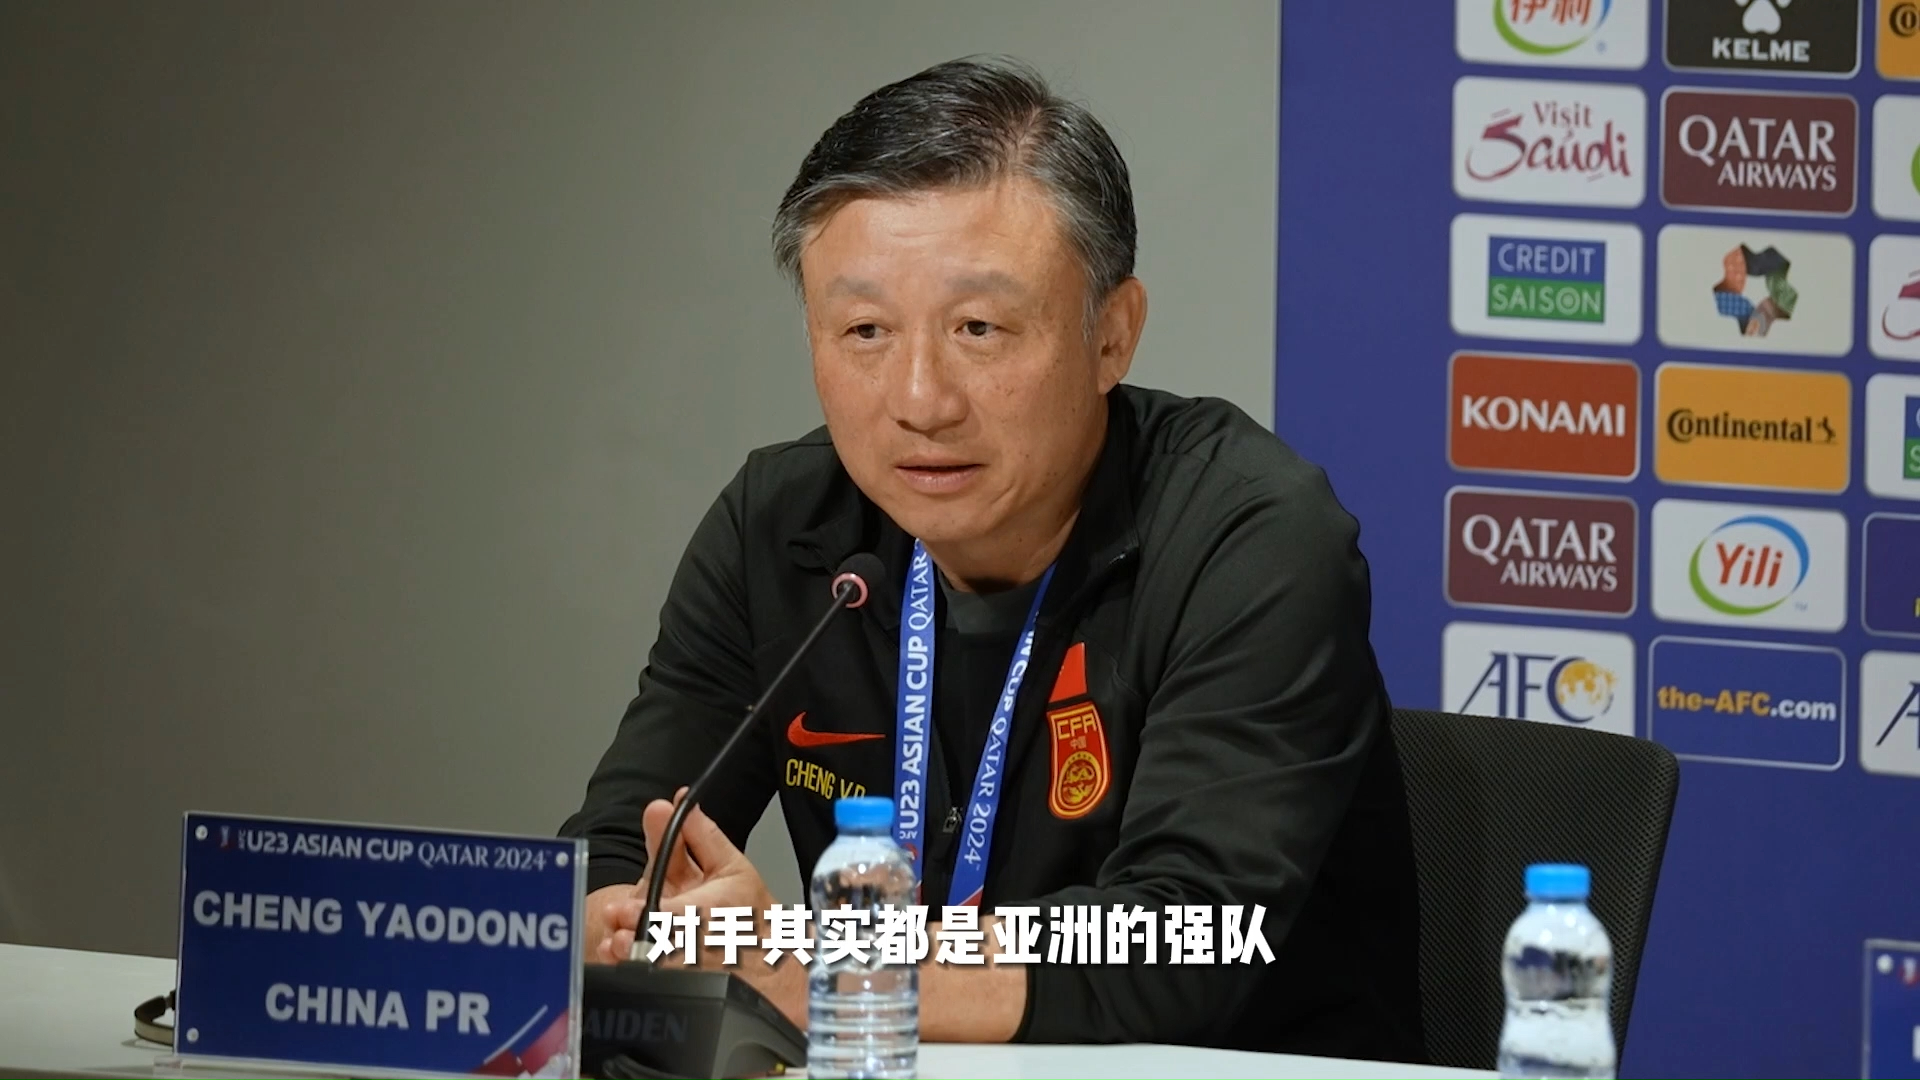 中国奥林匹克男子足球队主教练成耀东出席U23亚洲杯小组赛赛前发布会。他表示，期待与强队比赛，希望队员们放平心态，打出技战术水平与精神面貌。#u23亚洲杯#